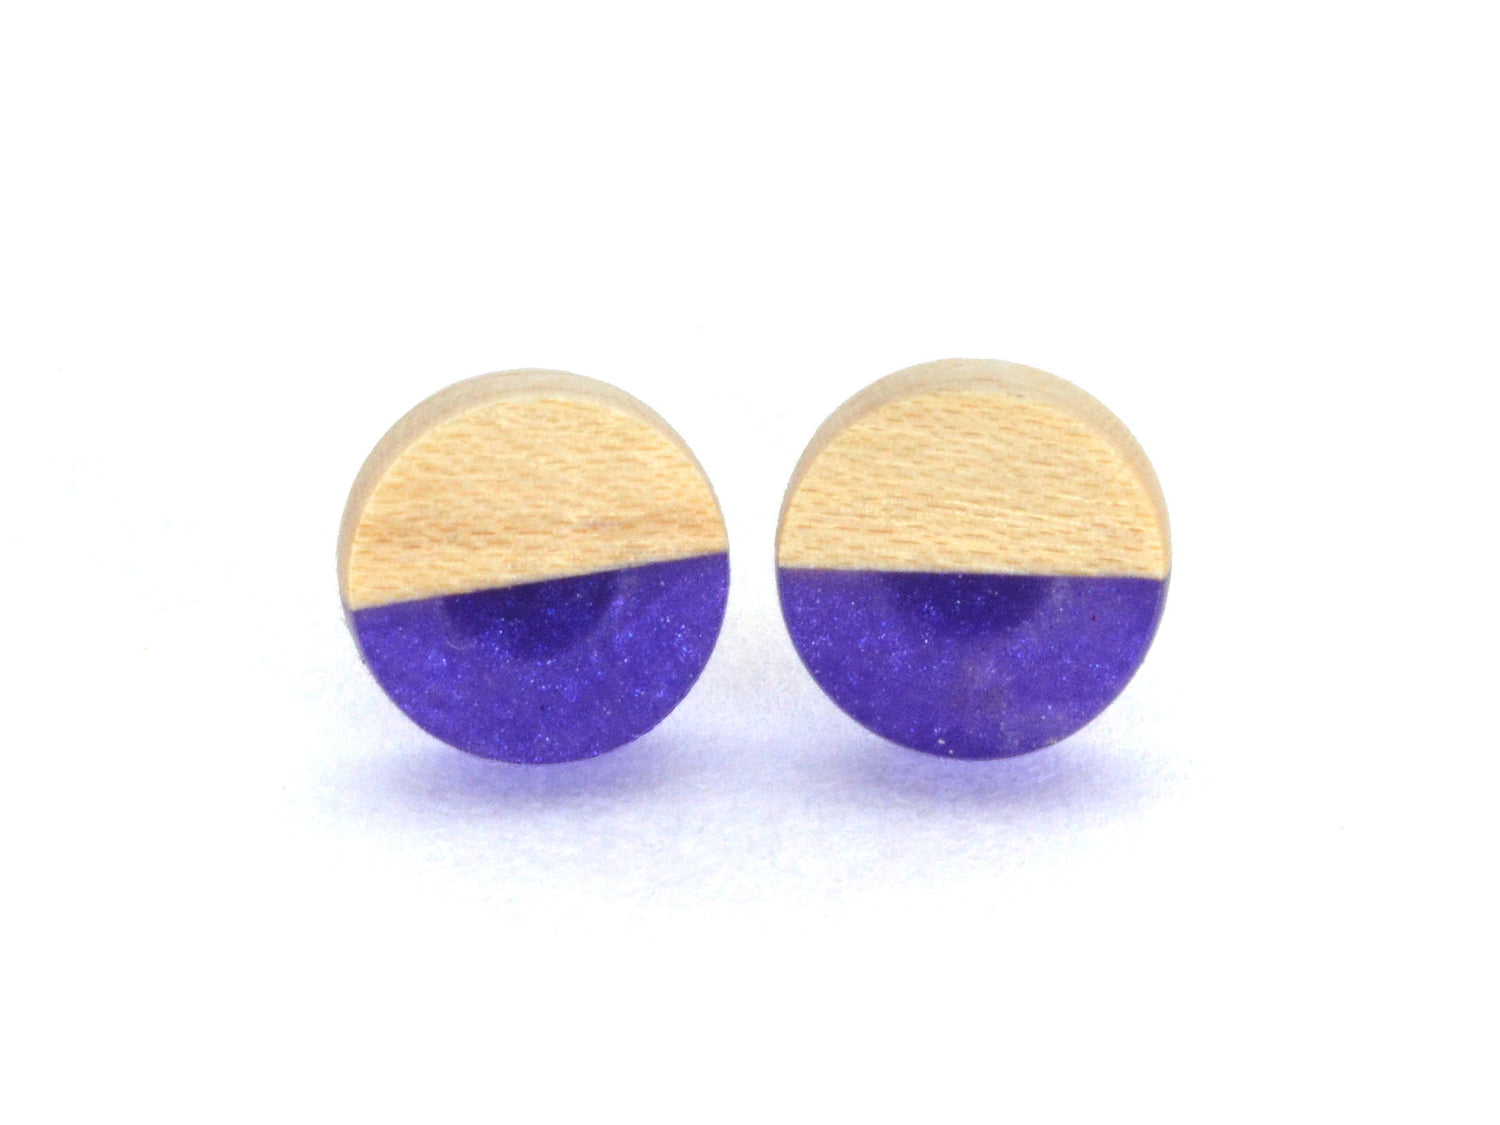 wooden stud earrings, purple with light maple